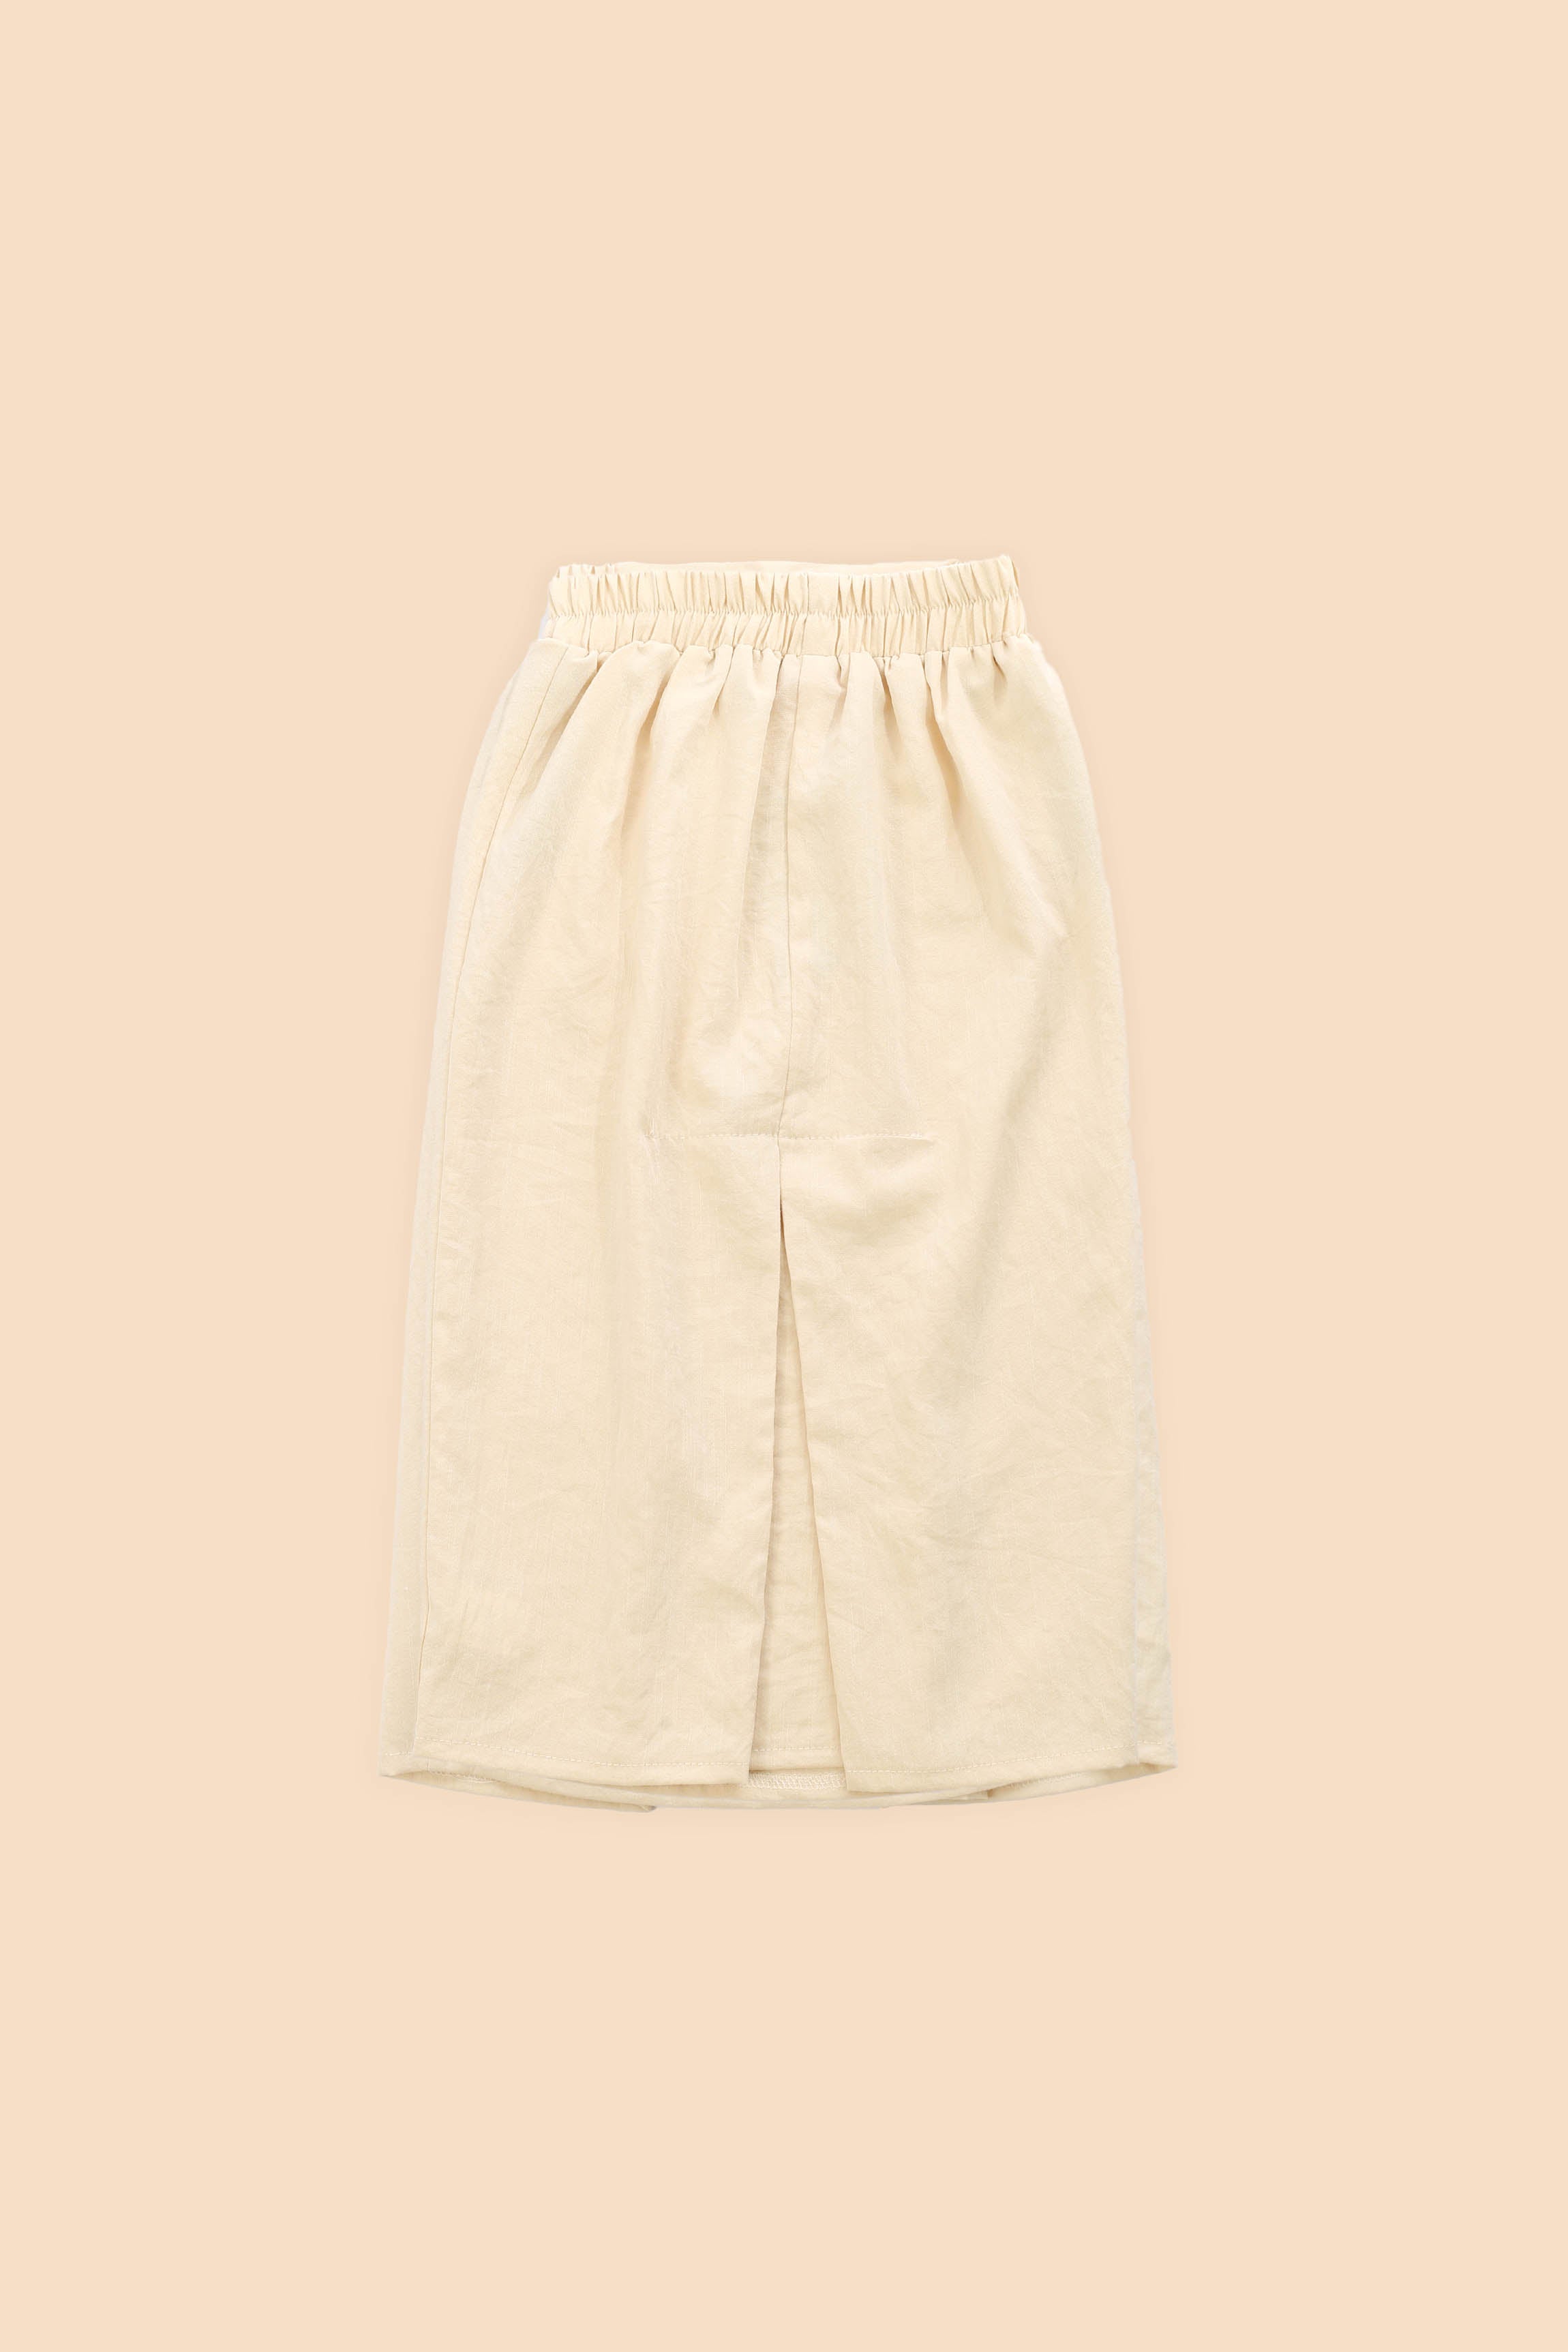 The Matahari Basic Skirt Beige